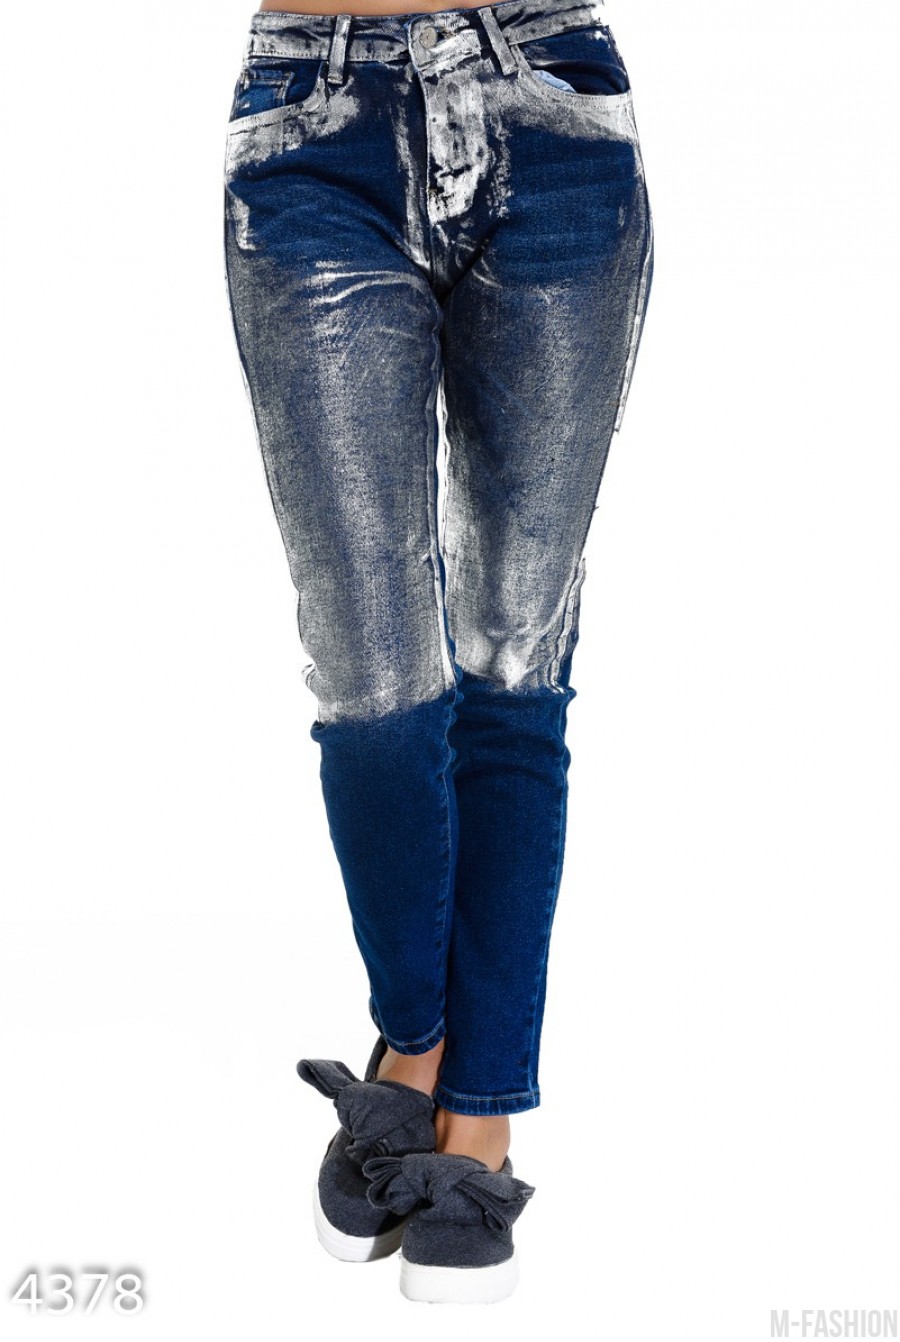 Синие классические джинсы покрытые до колен серебристой краской - Фото 1